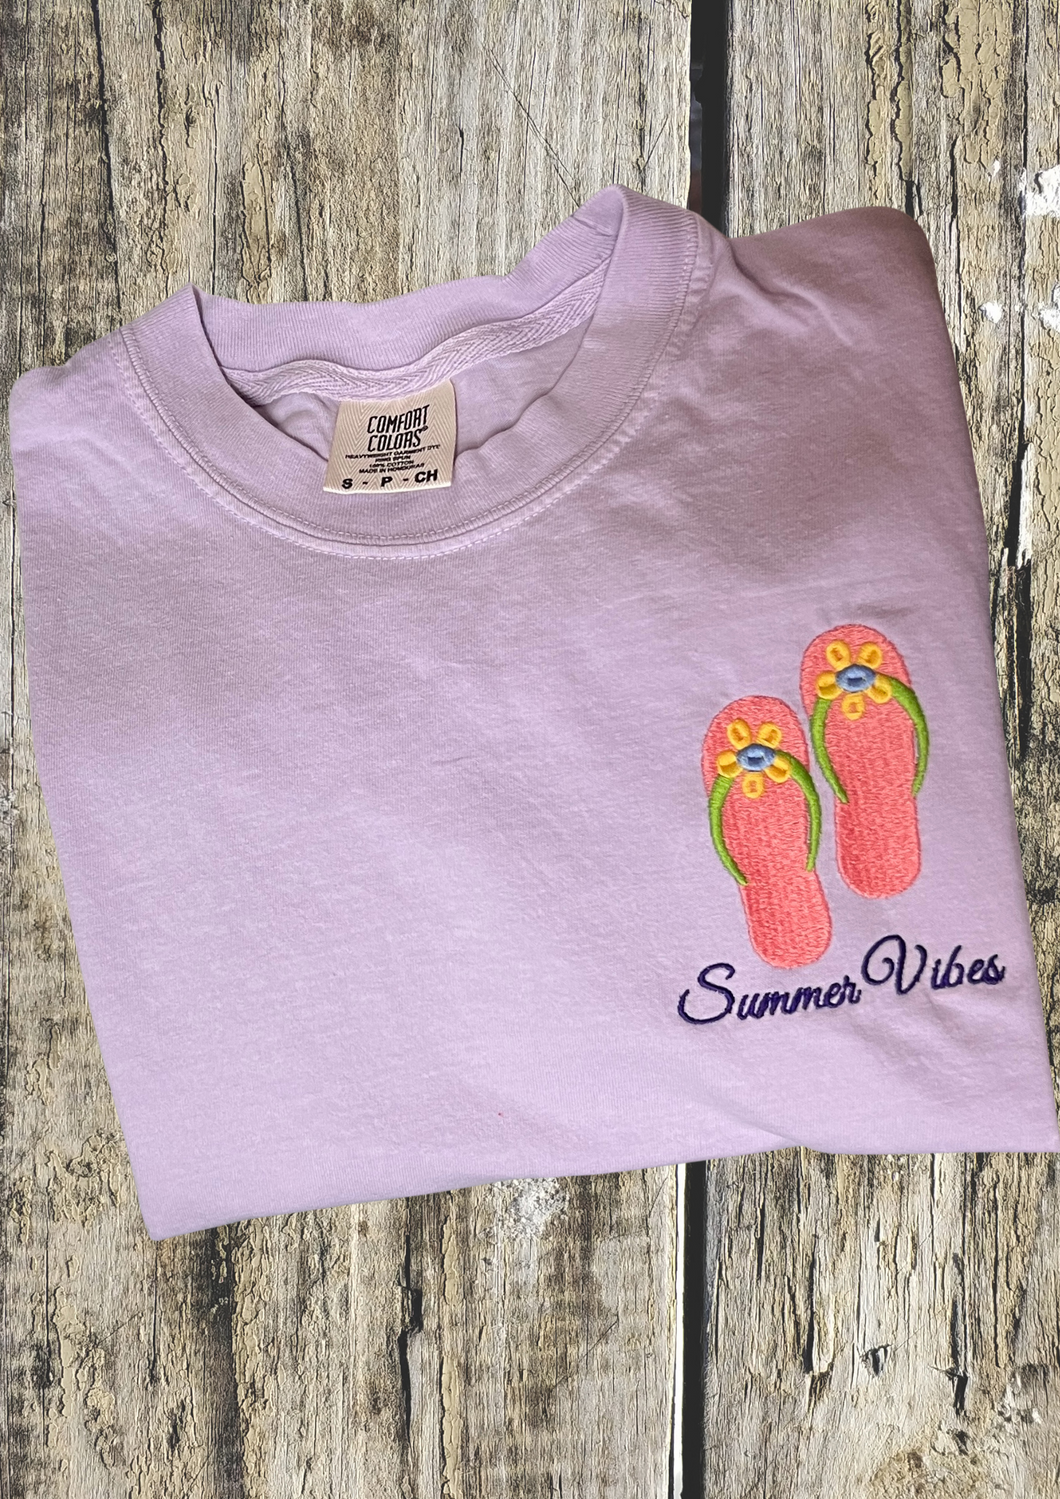 Short Sleeve Tshirt - Summer Vibes Flip Flops, Orchid